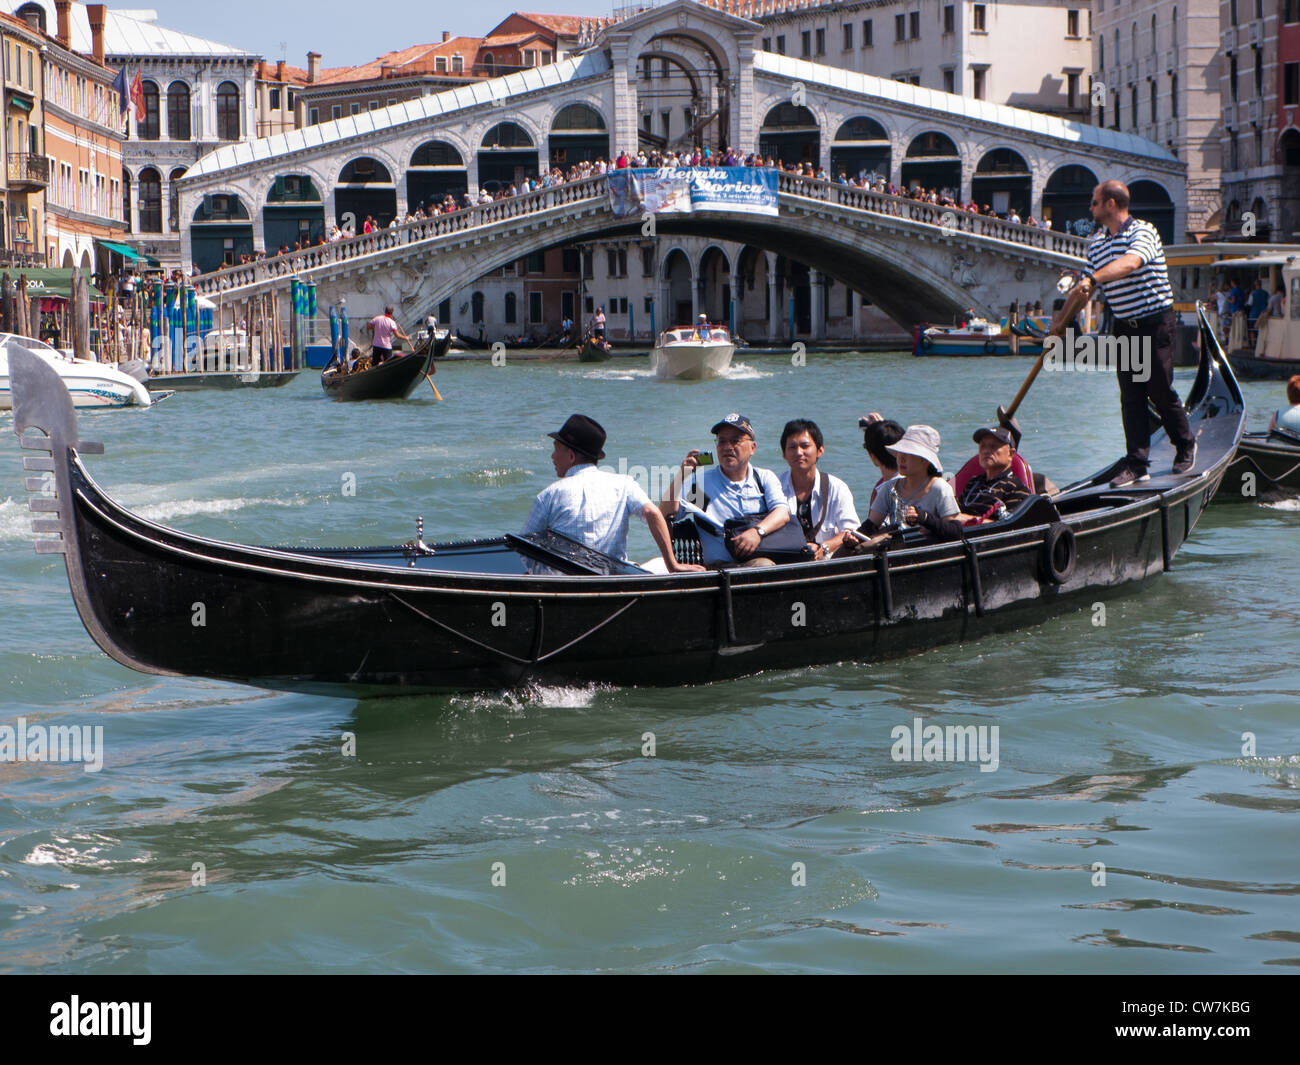 Les travées du pont du Rialto, le Grand Canal, Venise, Italie Banque D'Images